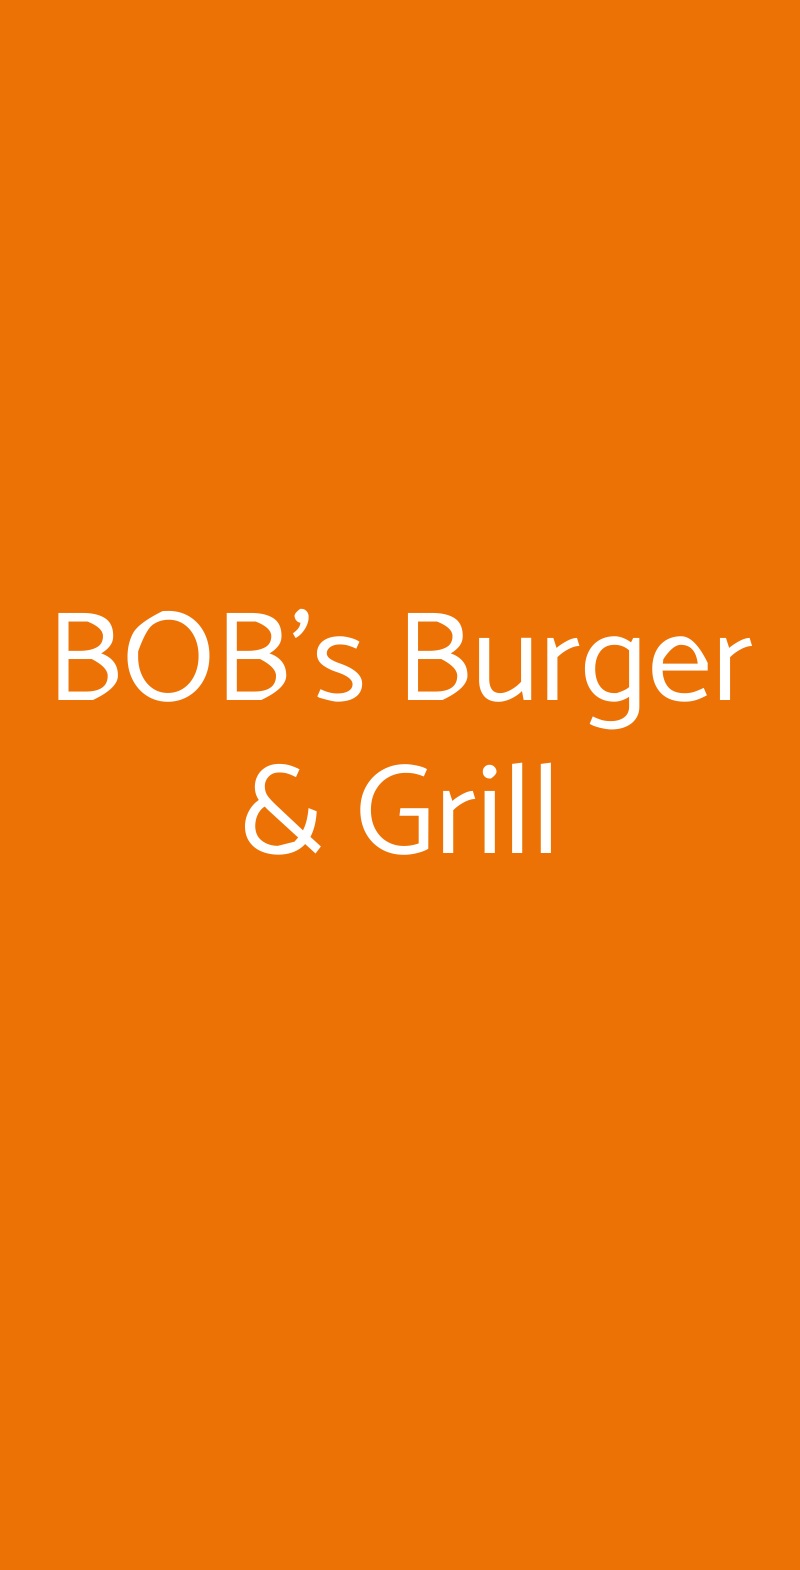 BOB's Burger & Grill San Giovanni In Croce menù 1 pagina